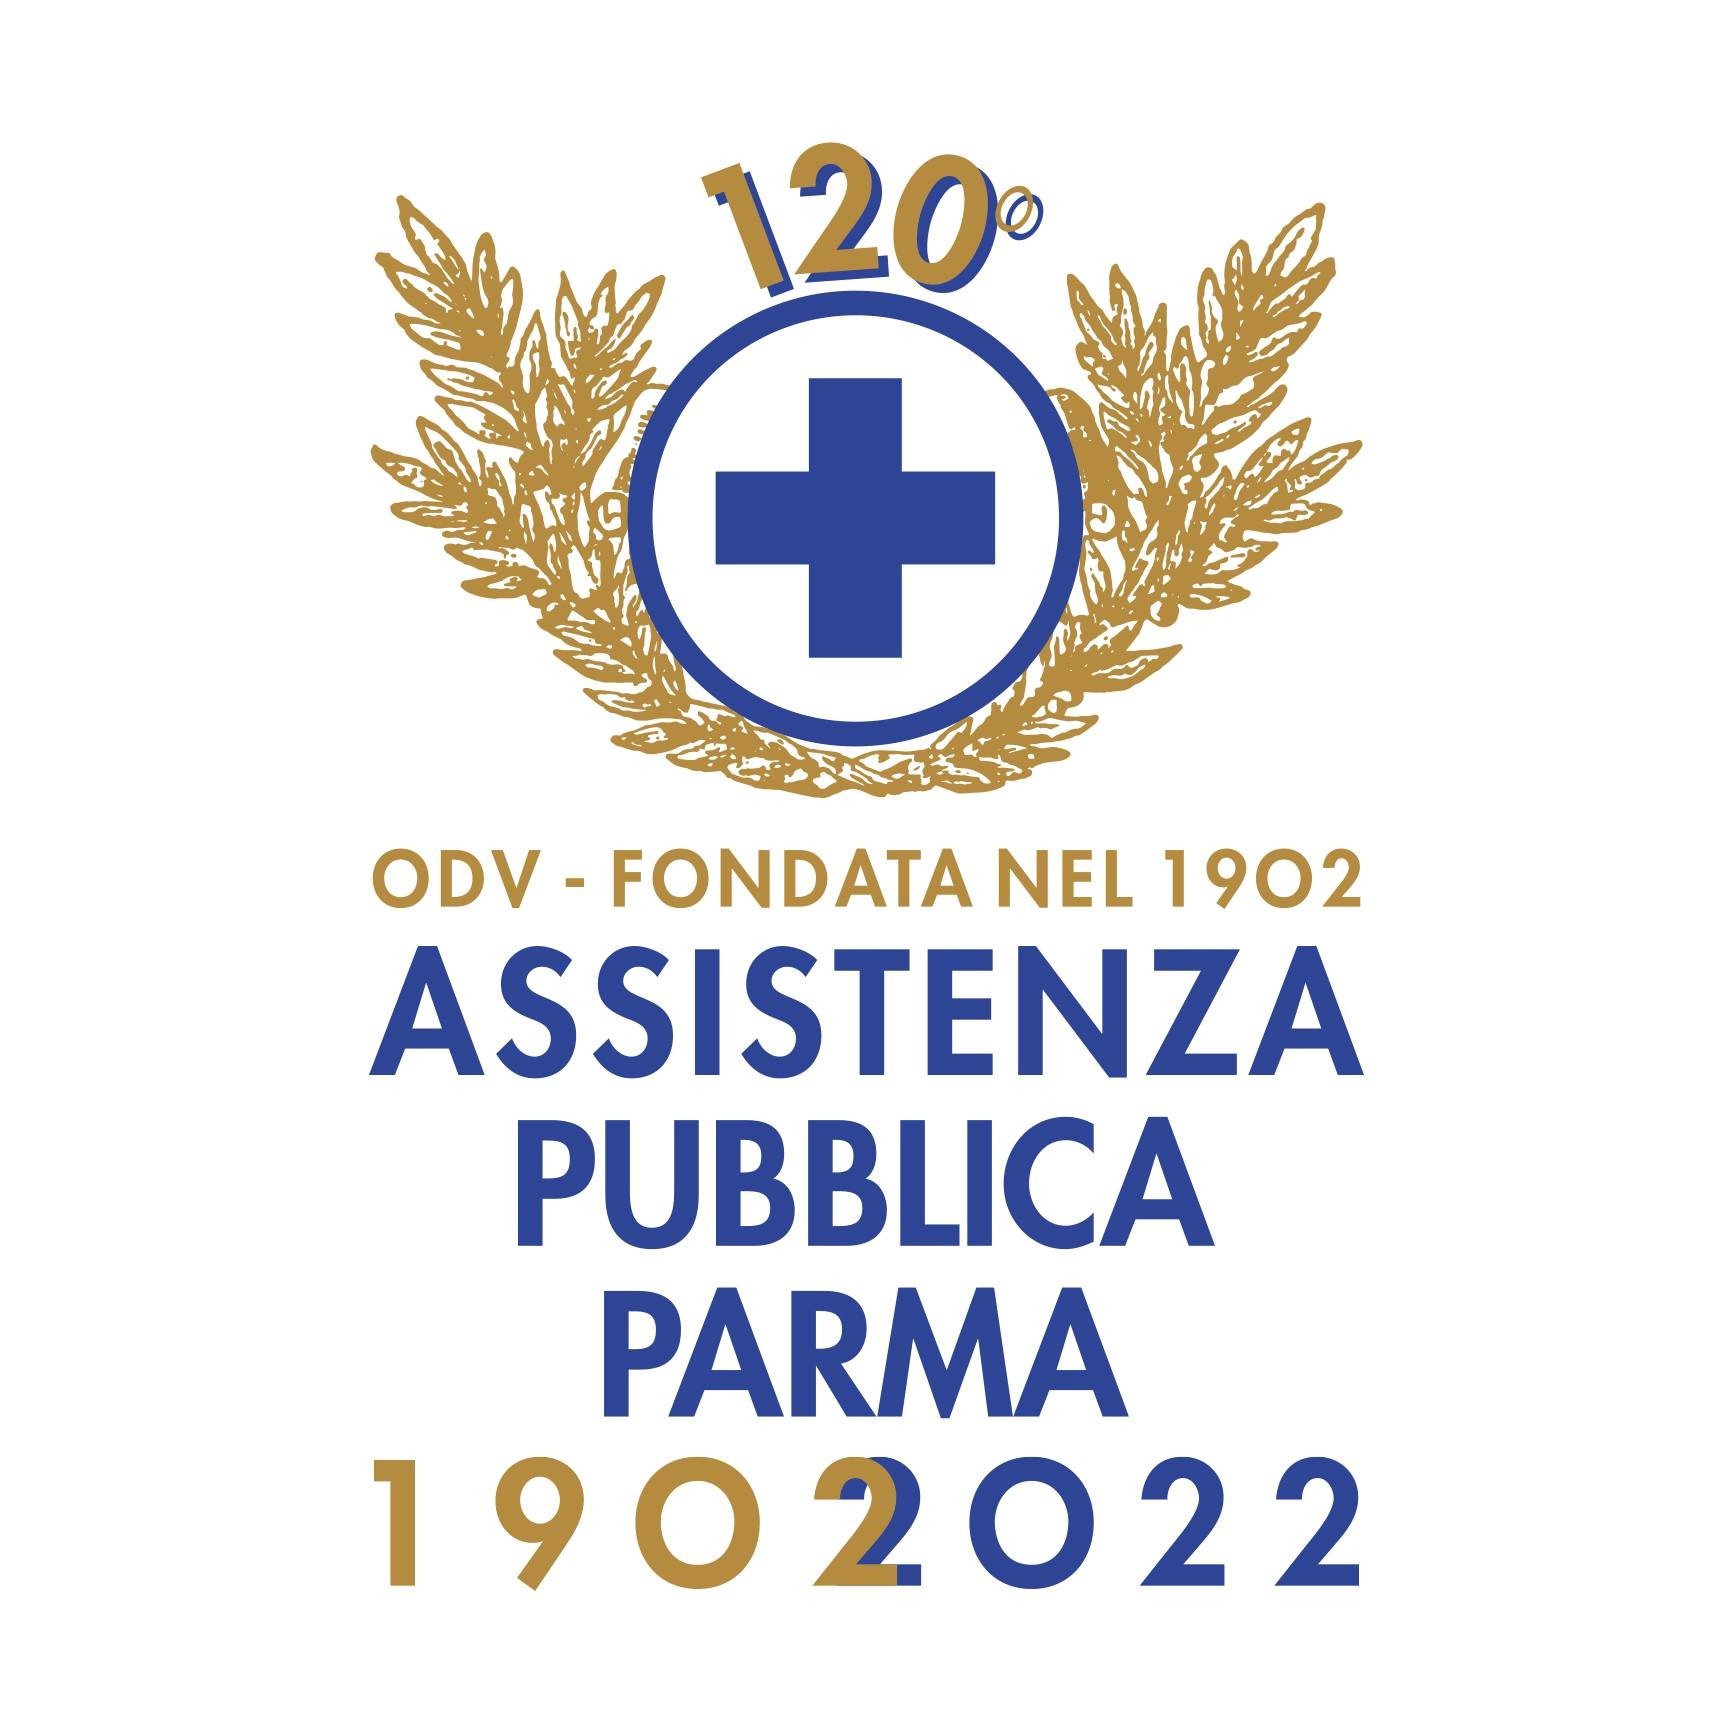 Assistenza Pubblica Parma ODV